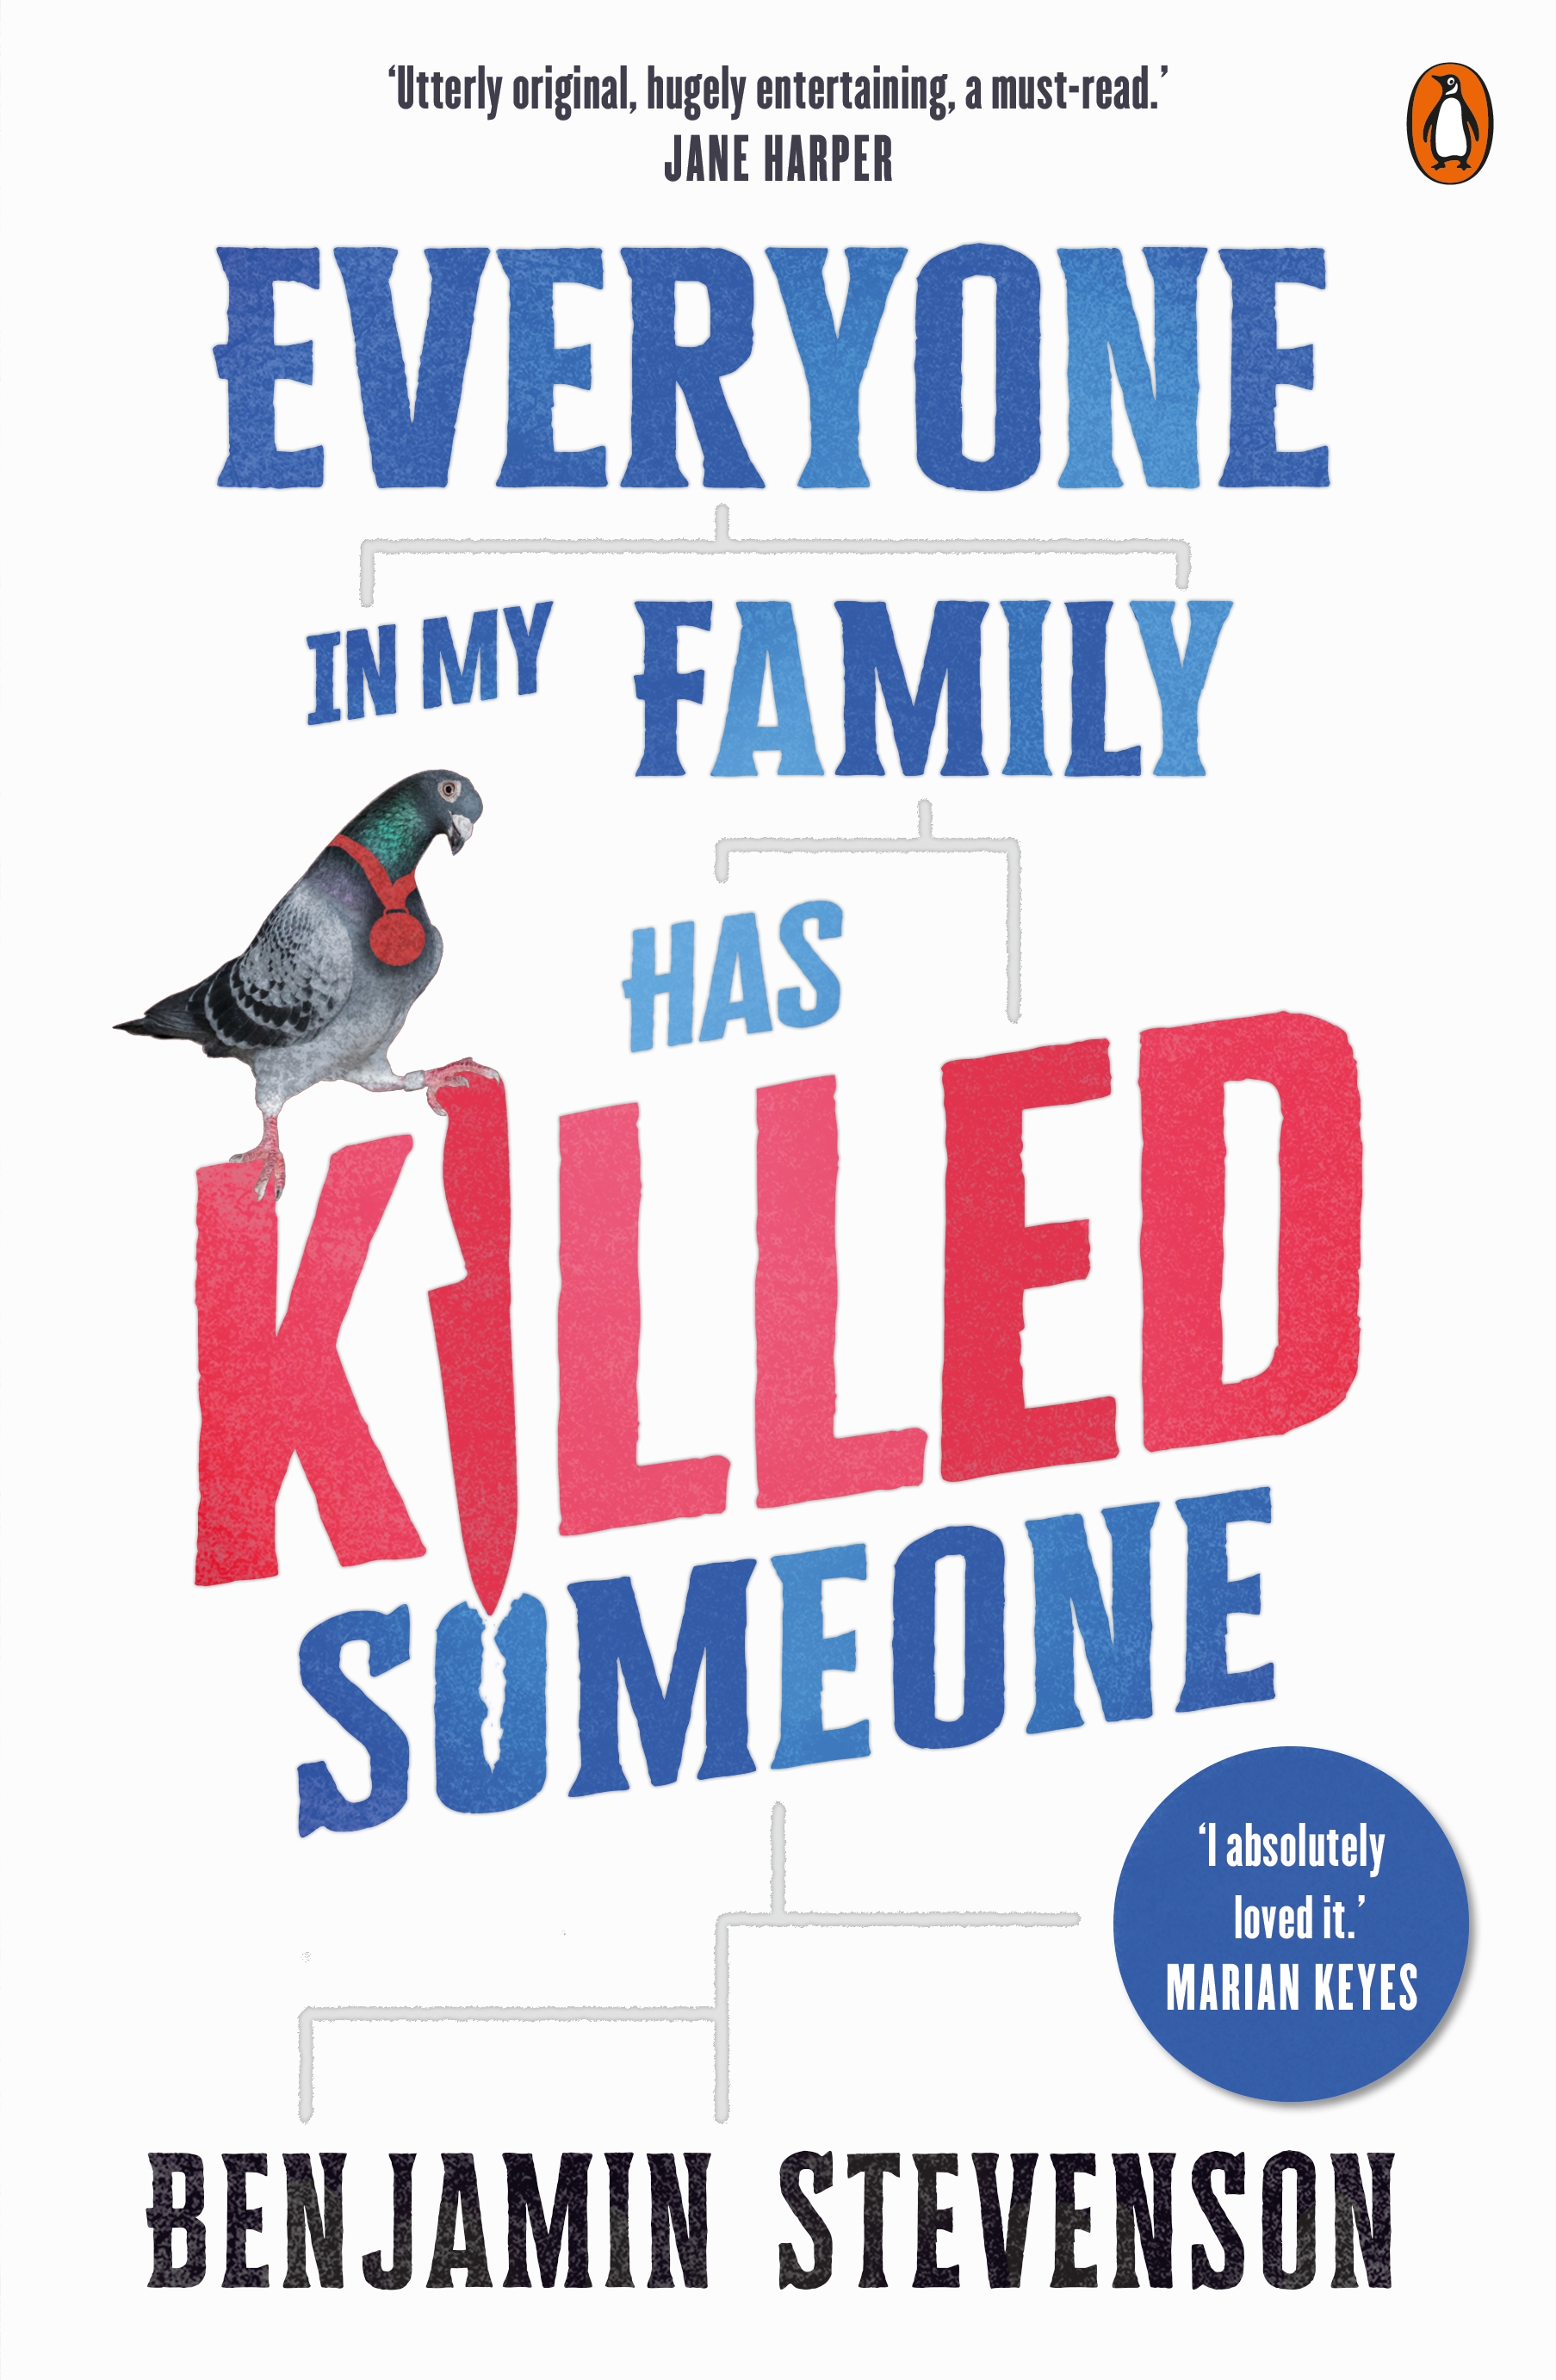 Everyone In My Family Has Killed Someone by Benjamin Stevenson - Penguin  Books Australia